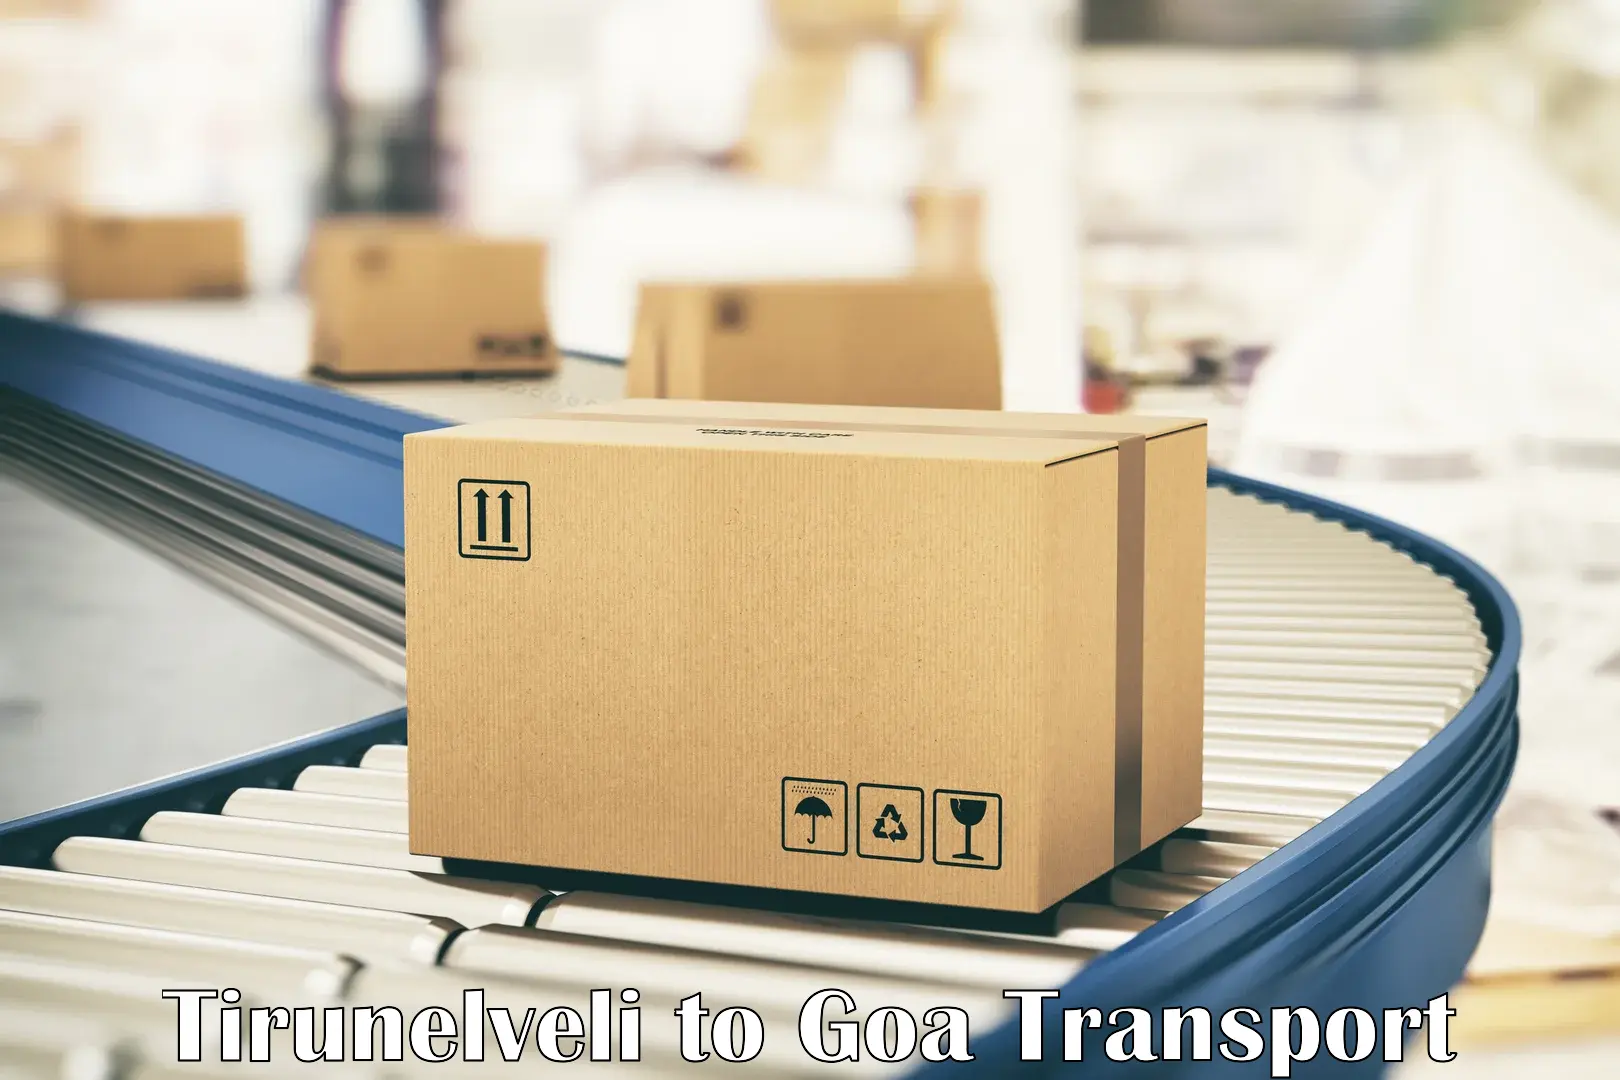 Transportation solution services Tirunelveli to Vasco da Gama